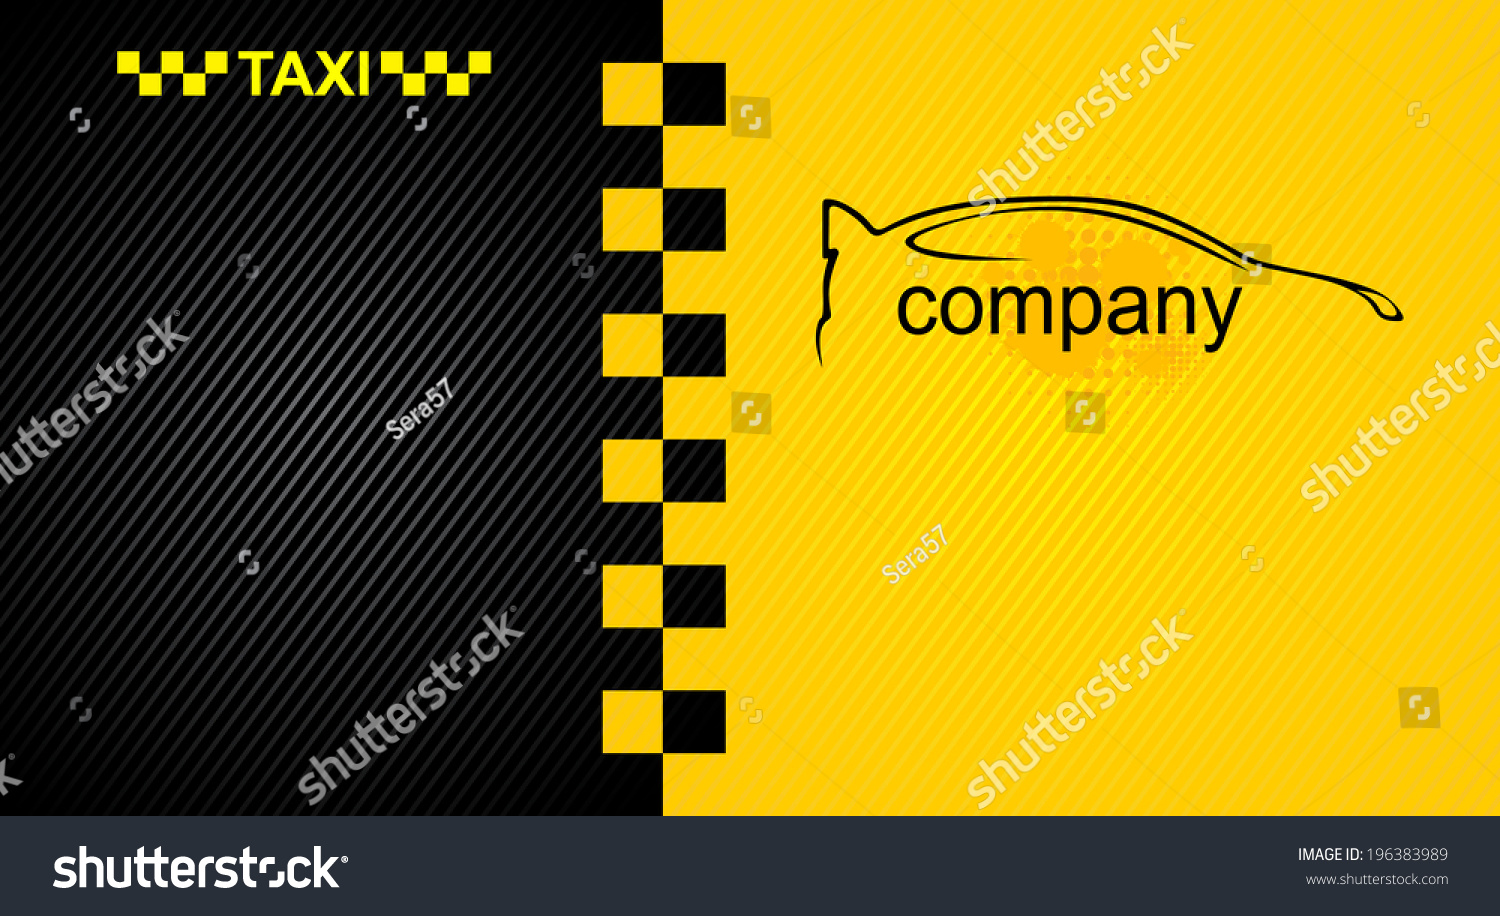 Визитки для такси желтые